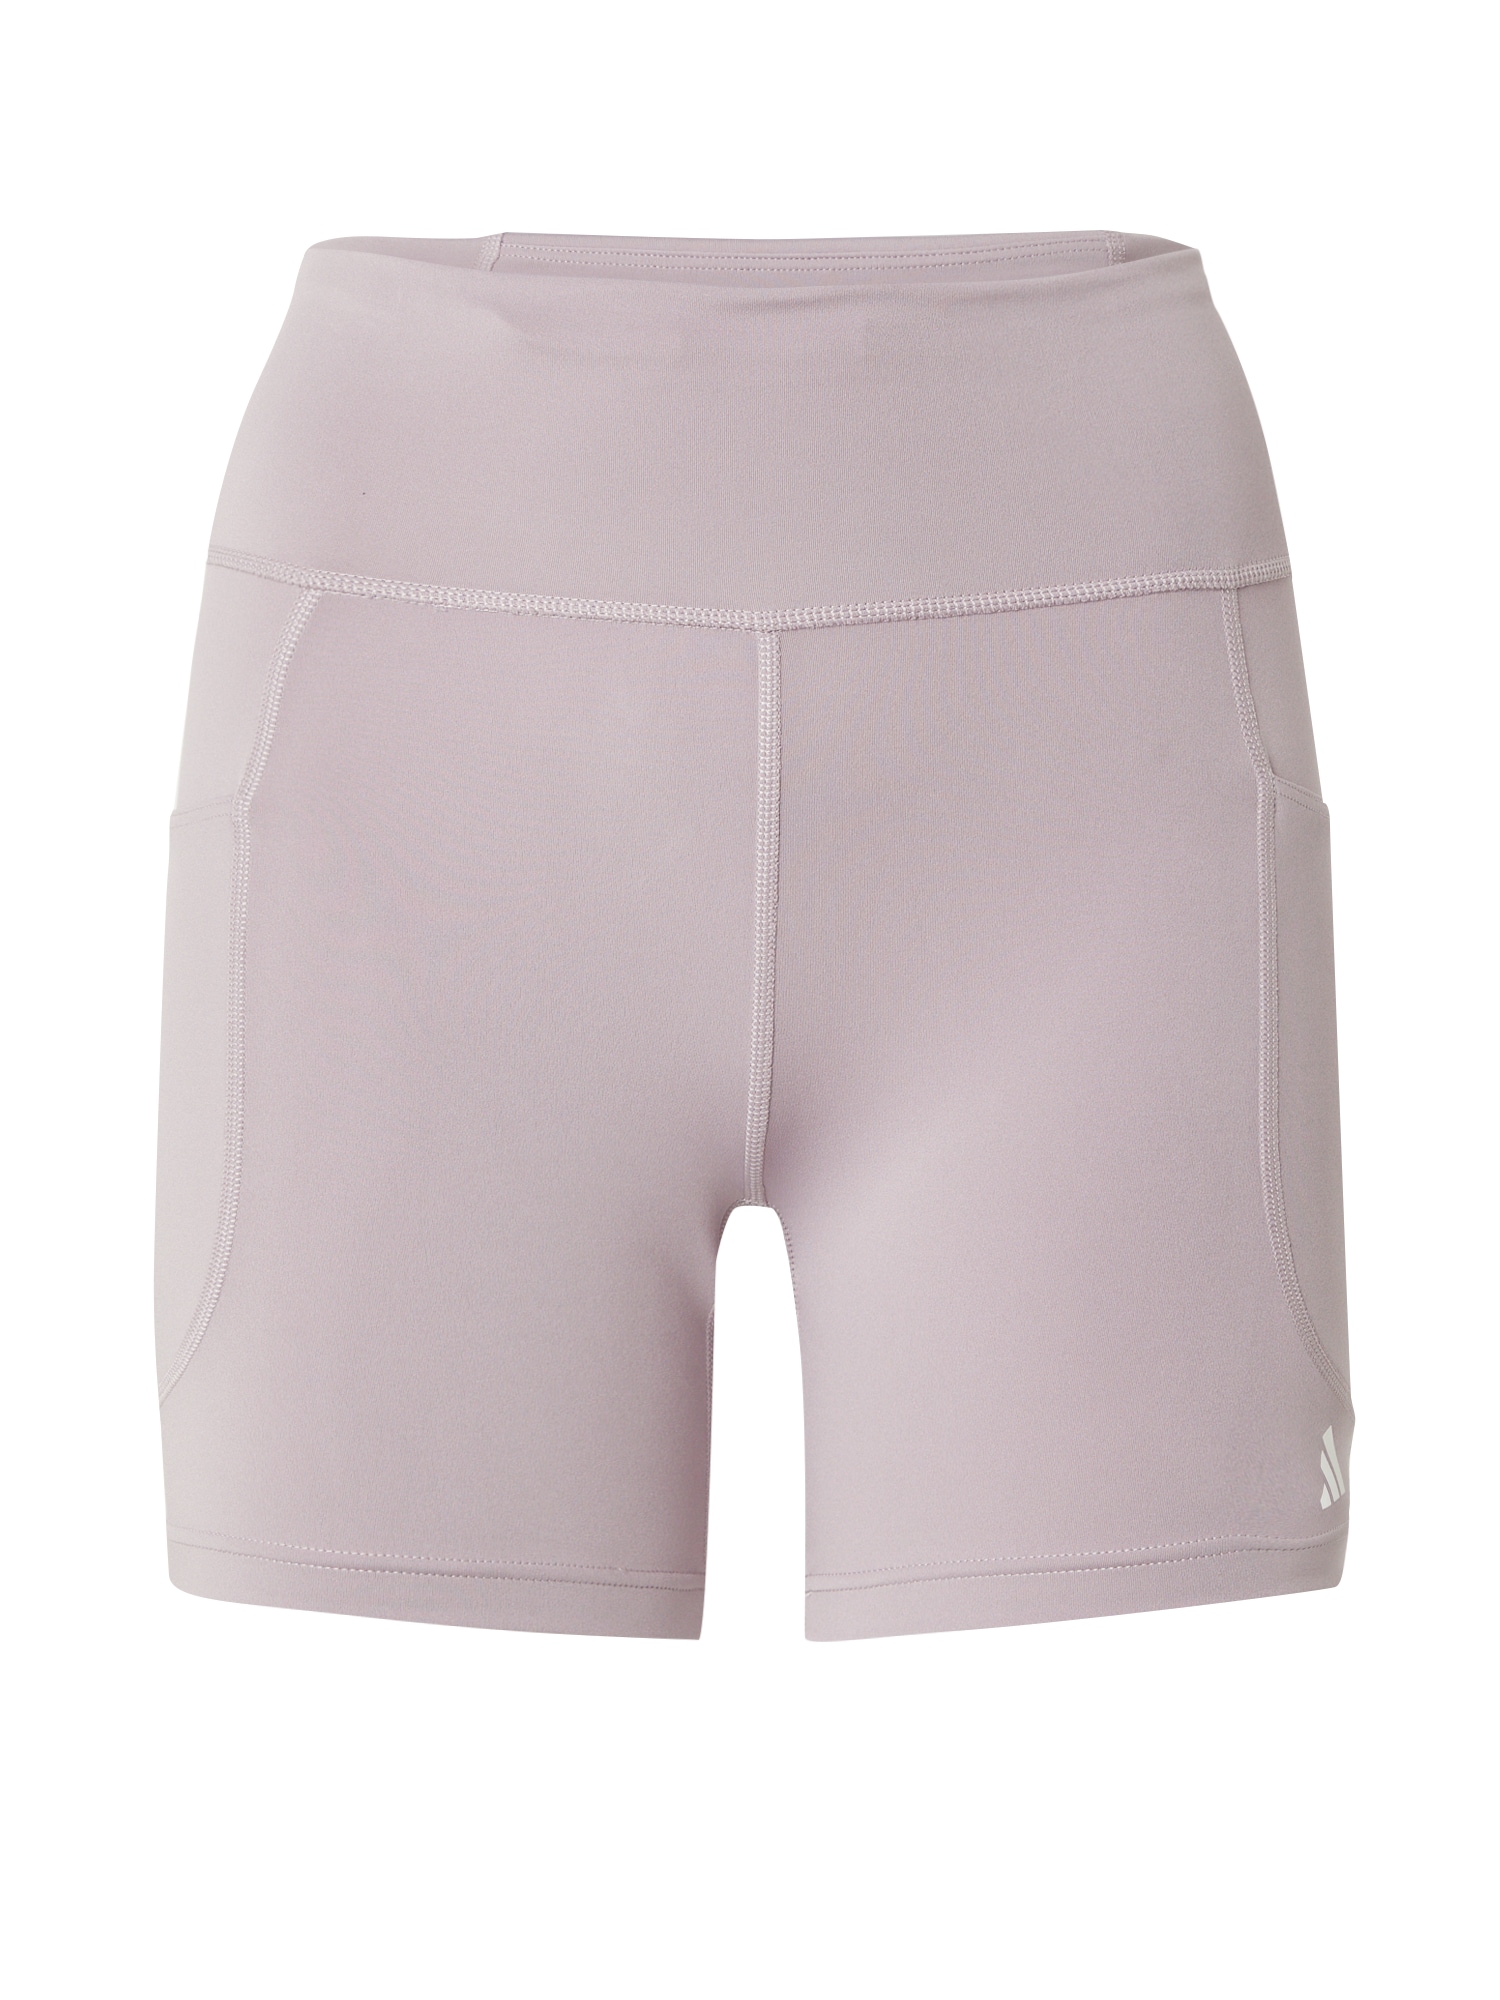 ADIDAS PERFORMANCE Sportinės kelnės 'DailyRun' rausvai violetinė spalva / balta